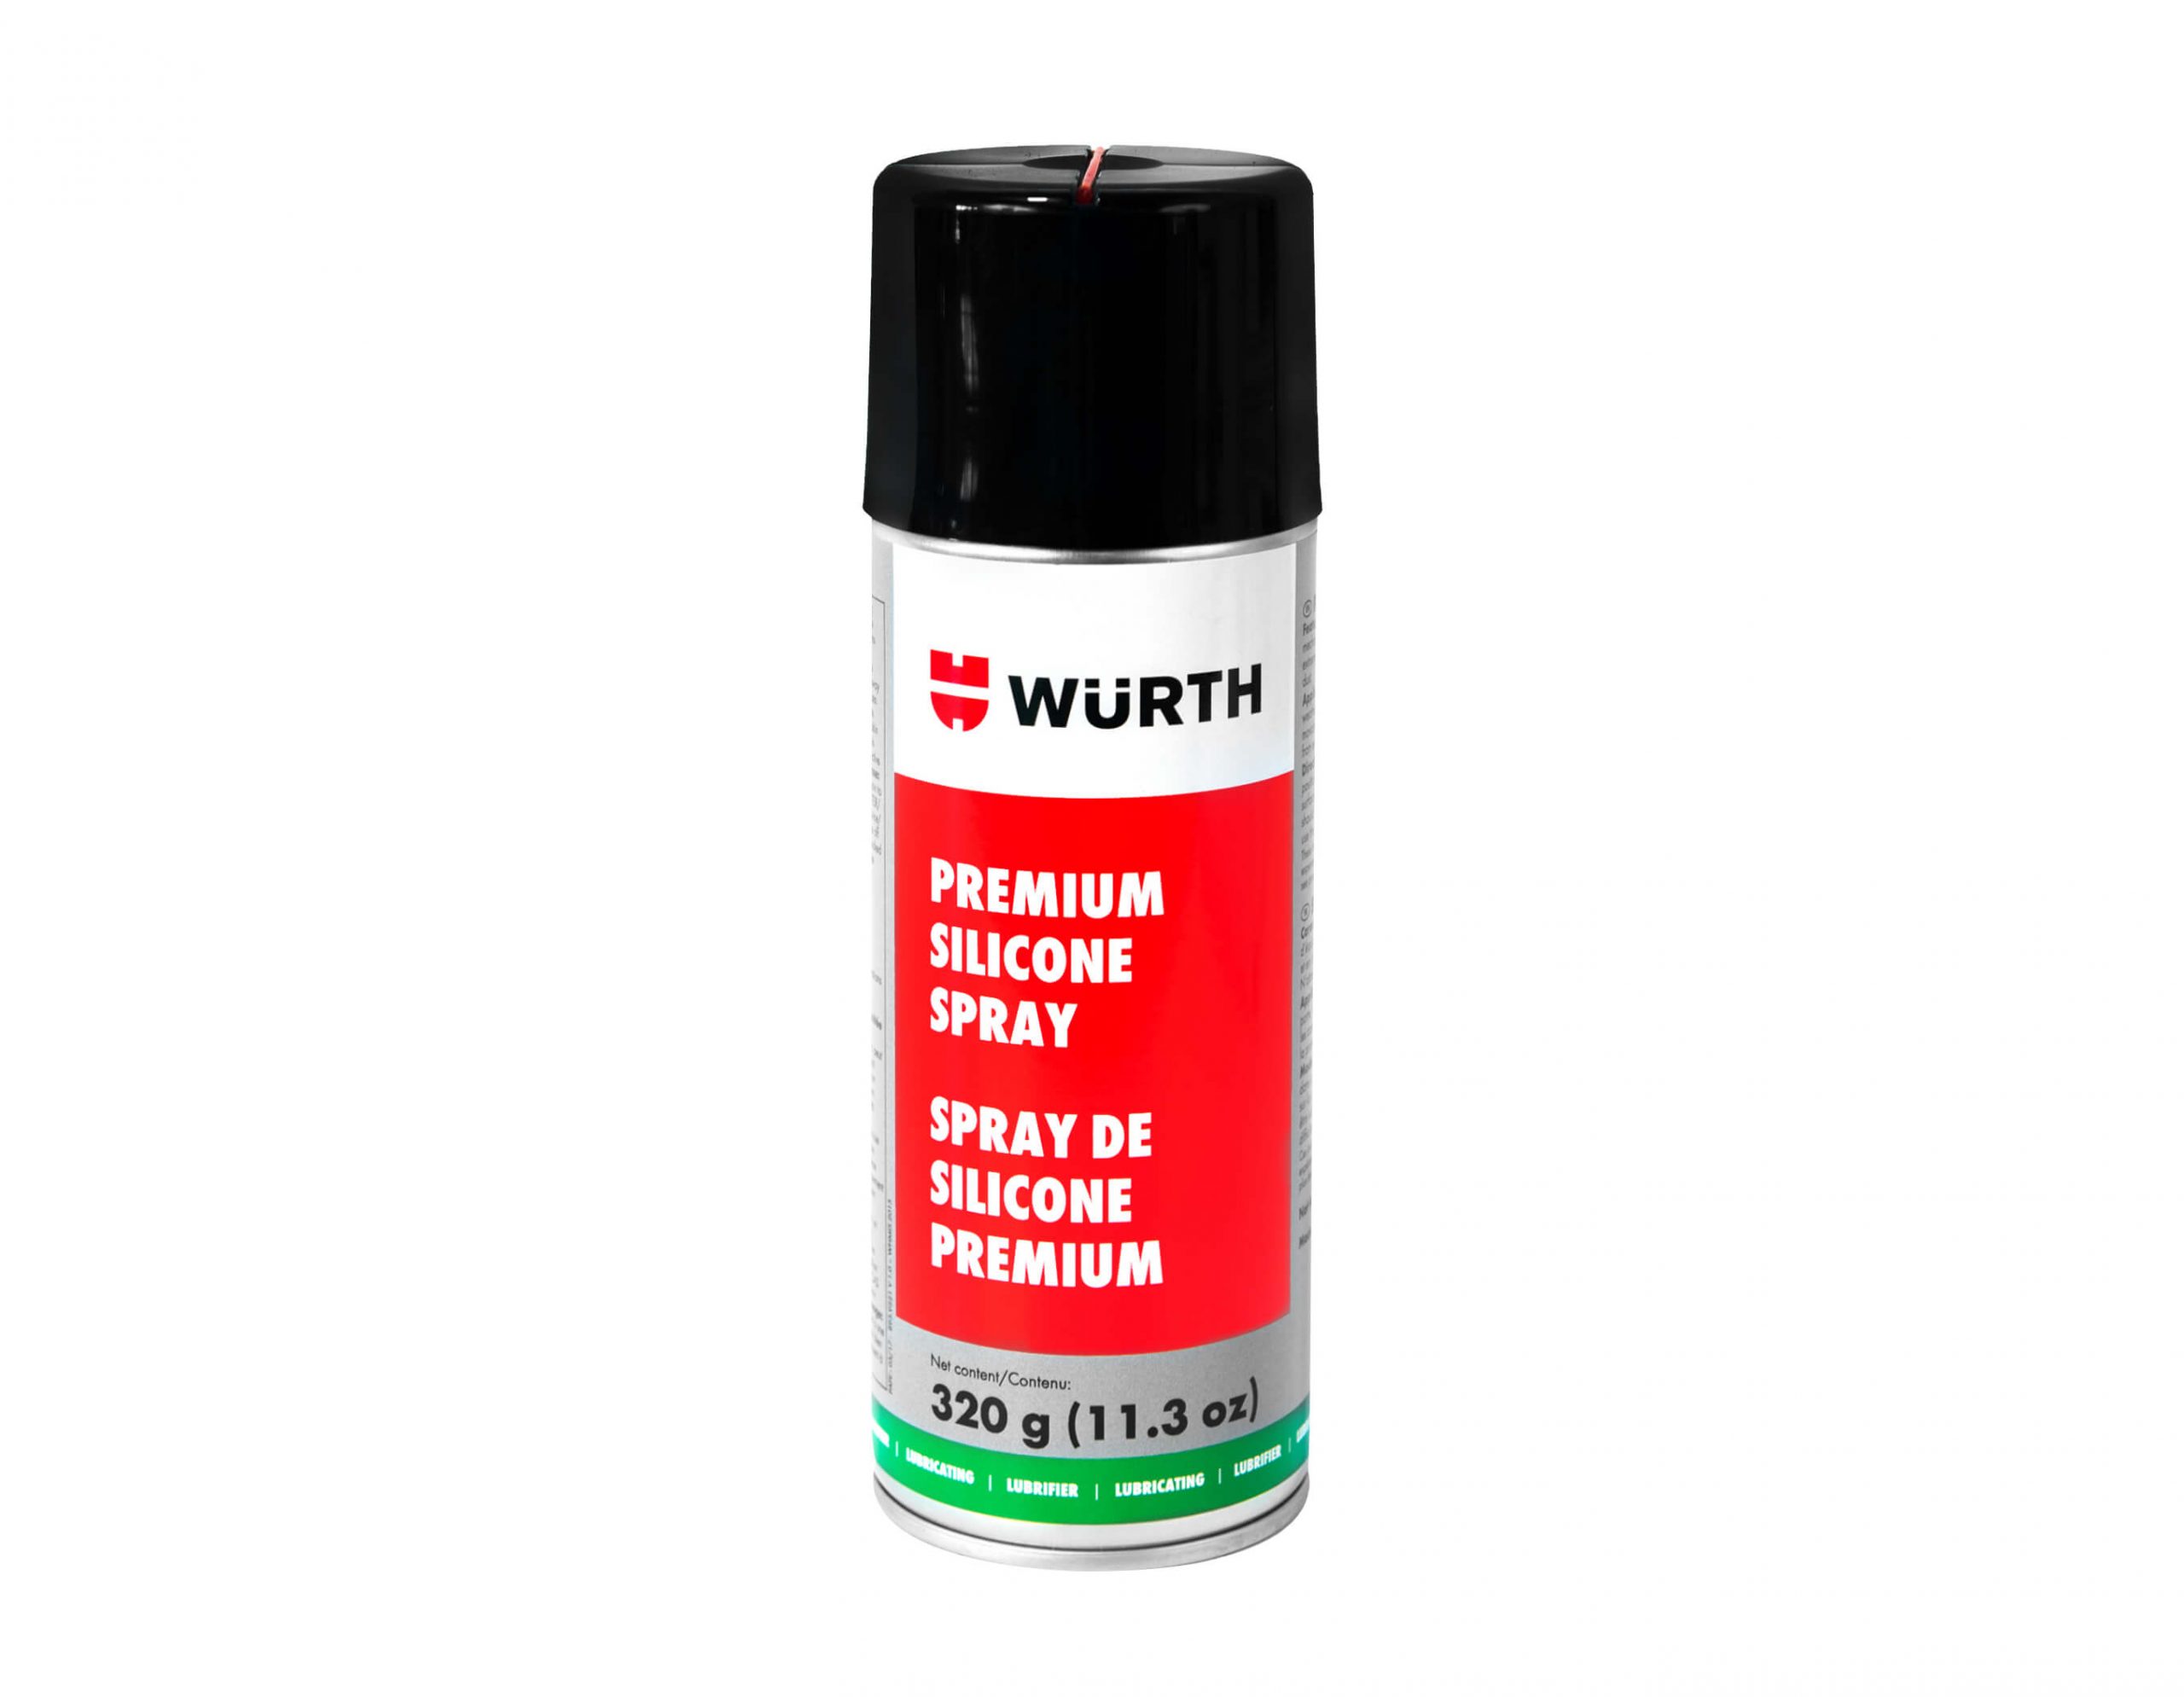 Wurth Silicone Spray Lubricant